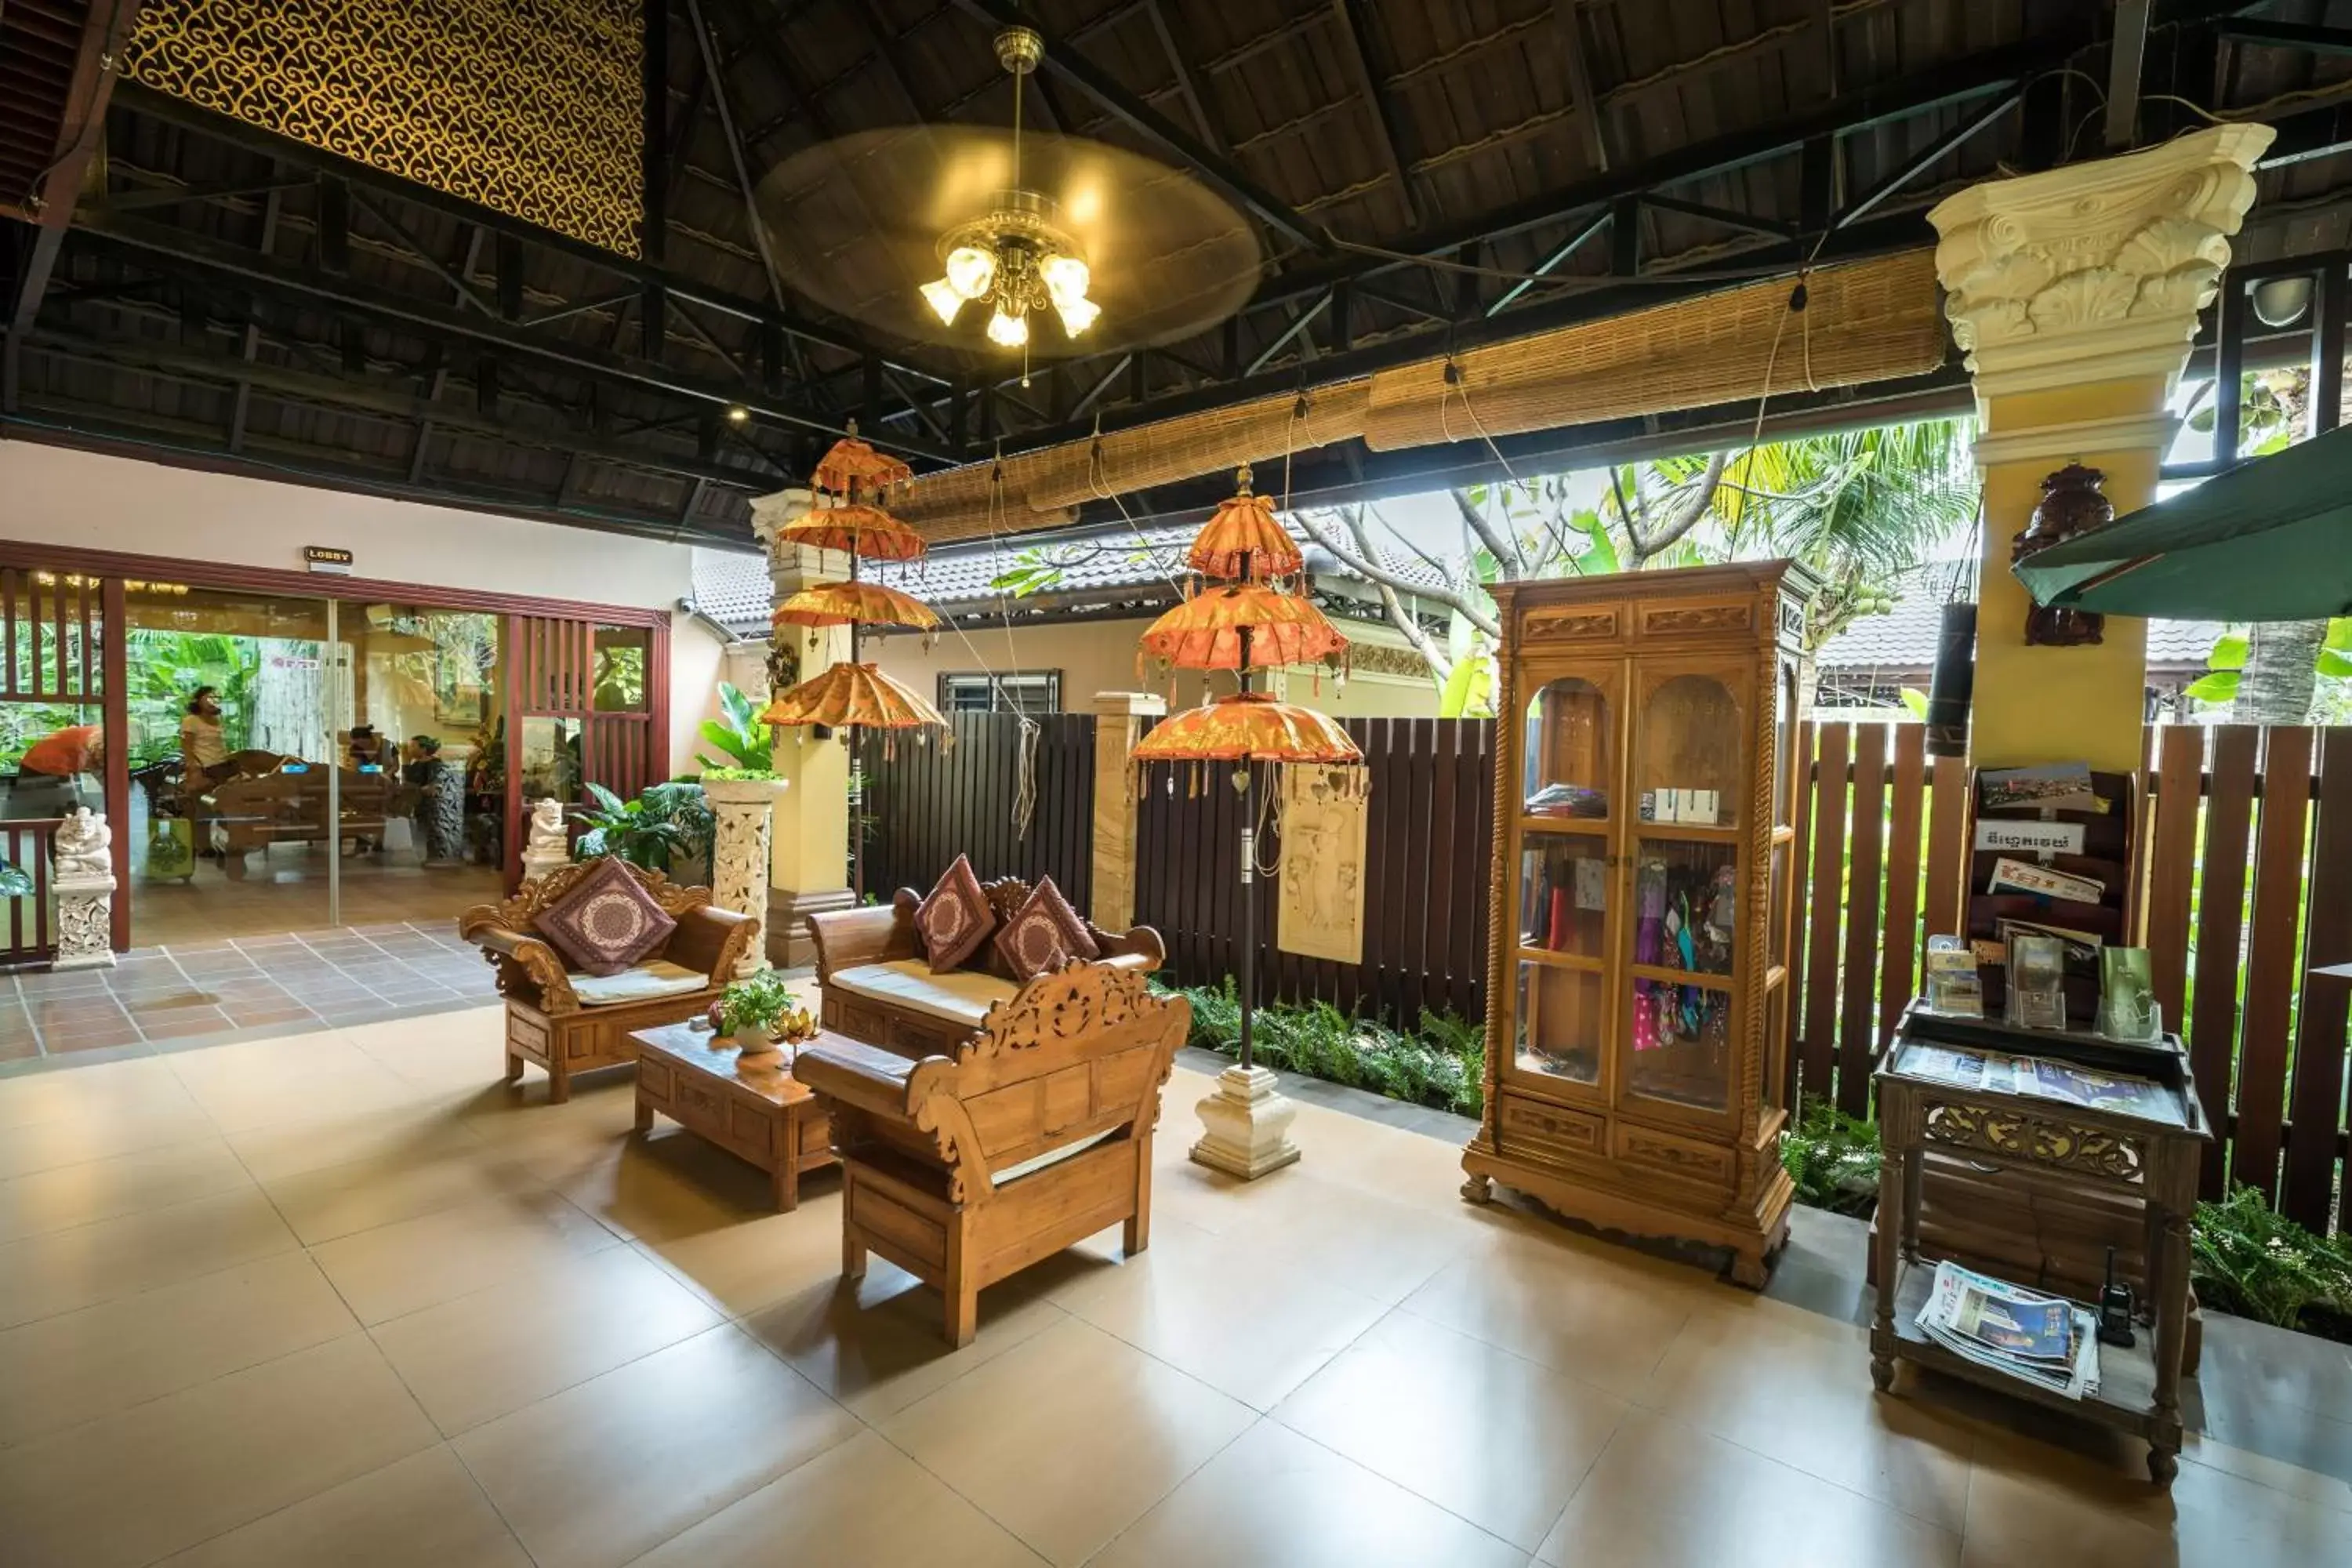 Lobby or reception, Lobby/Reception in Bali Hotel